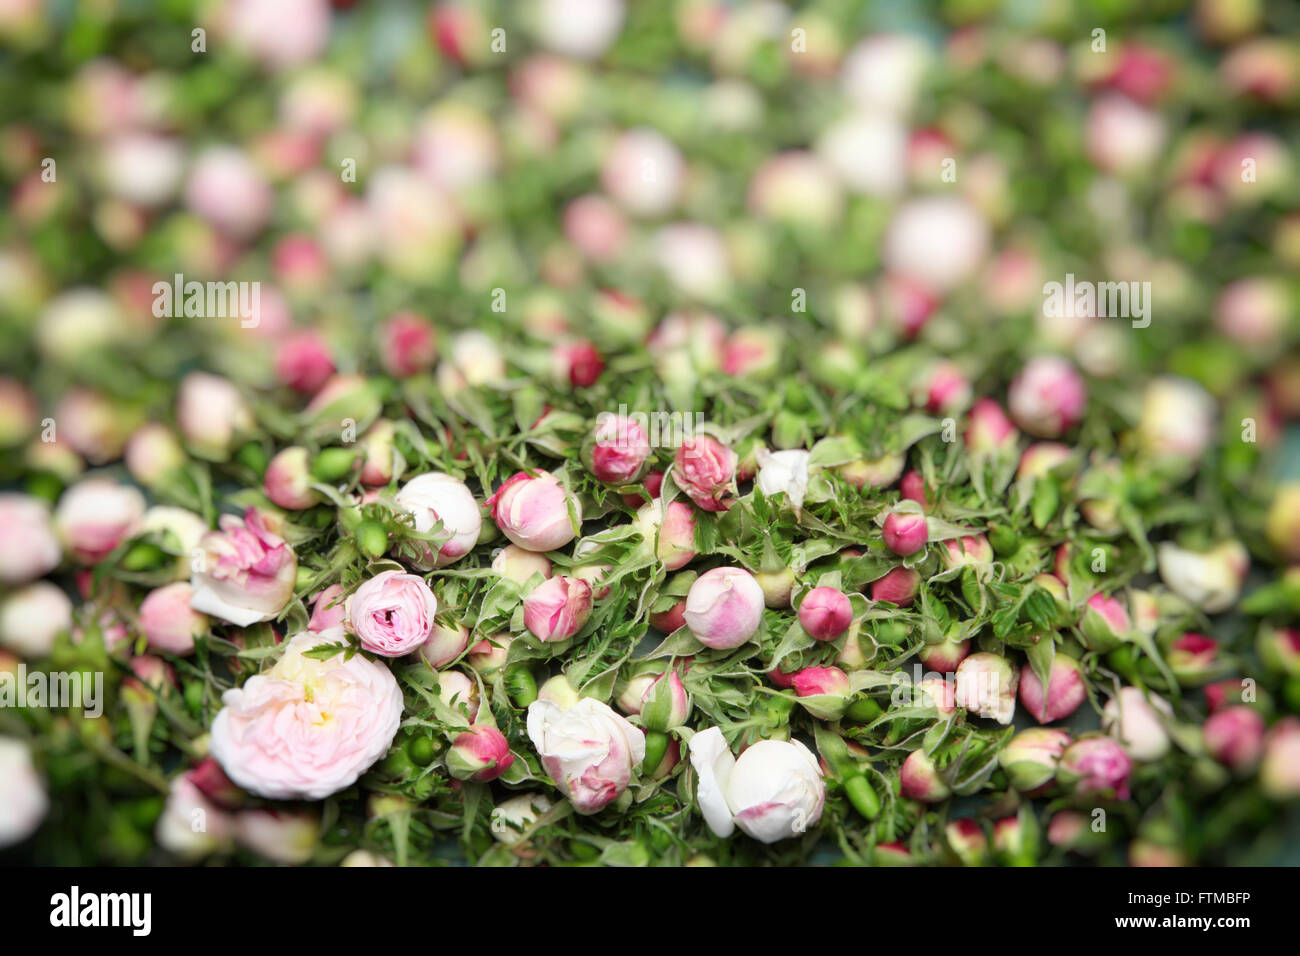 Image of vintage nostalgic white roses buds background texture. Stock Photo